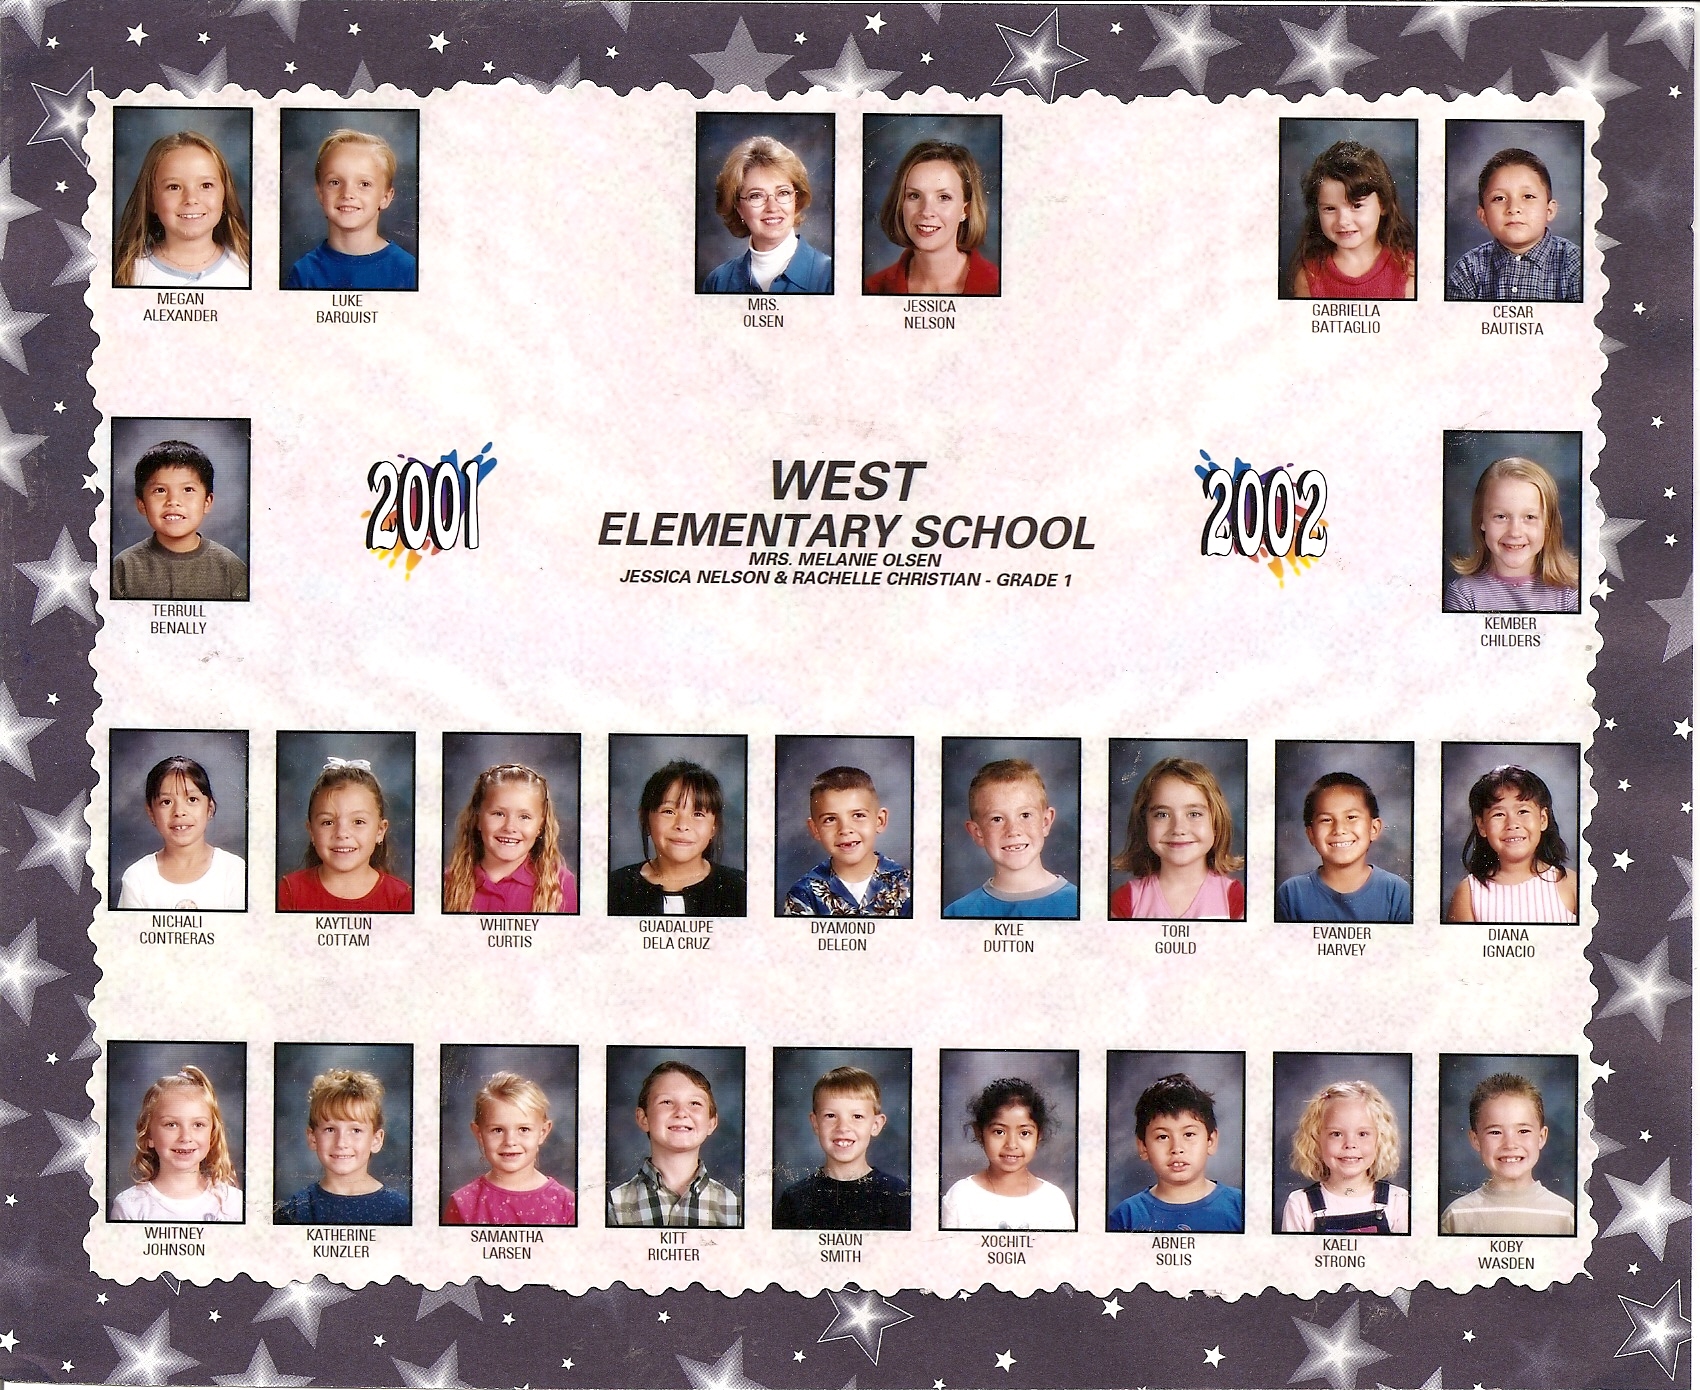 Mrs. Jessica Nelson & Mrs. Rachelle Christian's 2001-2002 first grade class at West Elementary School